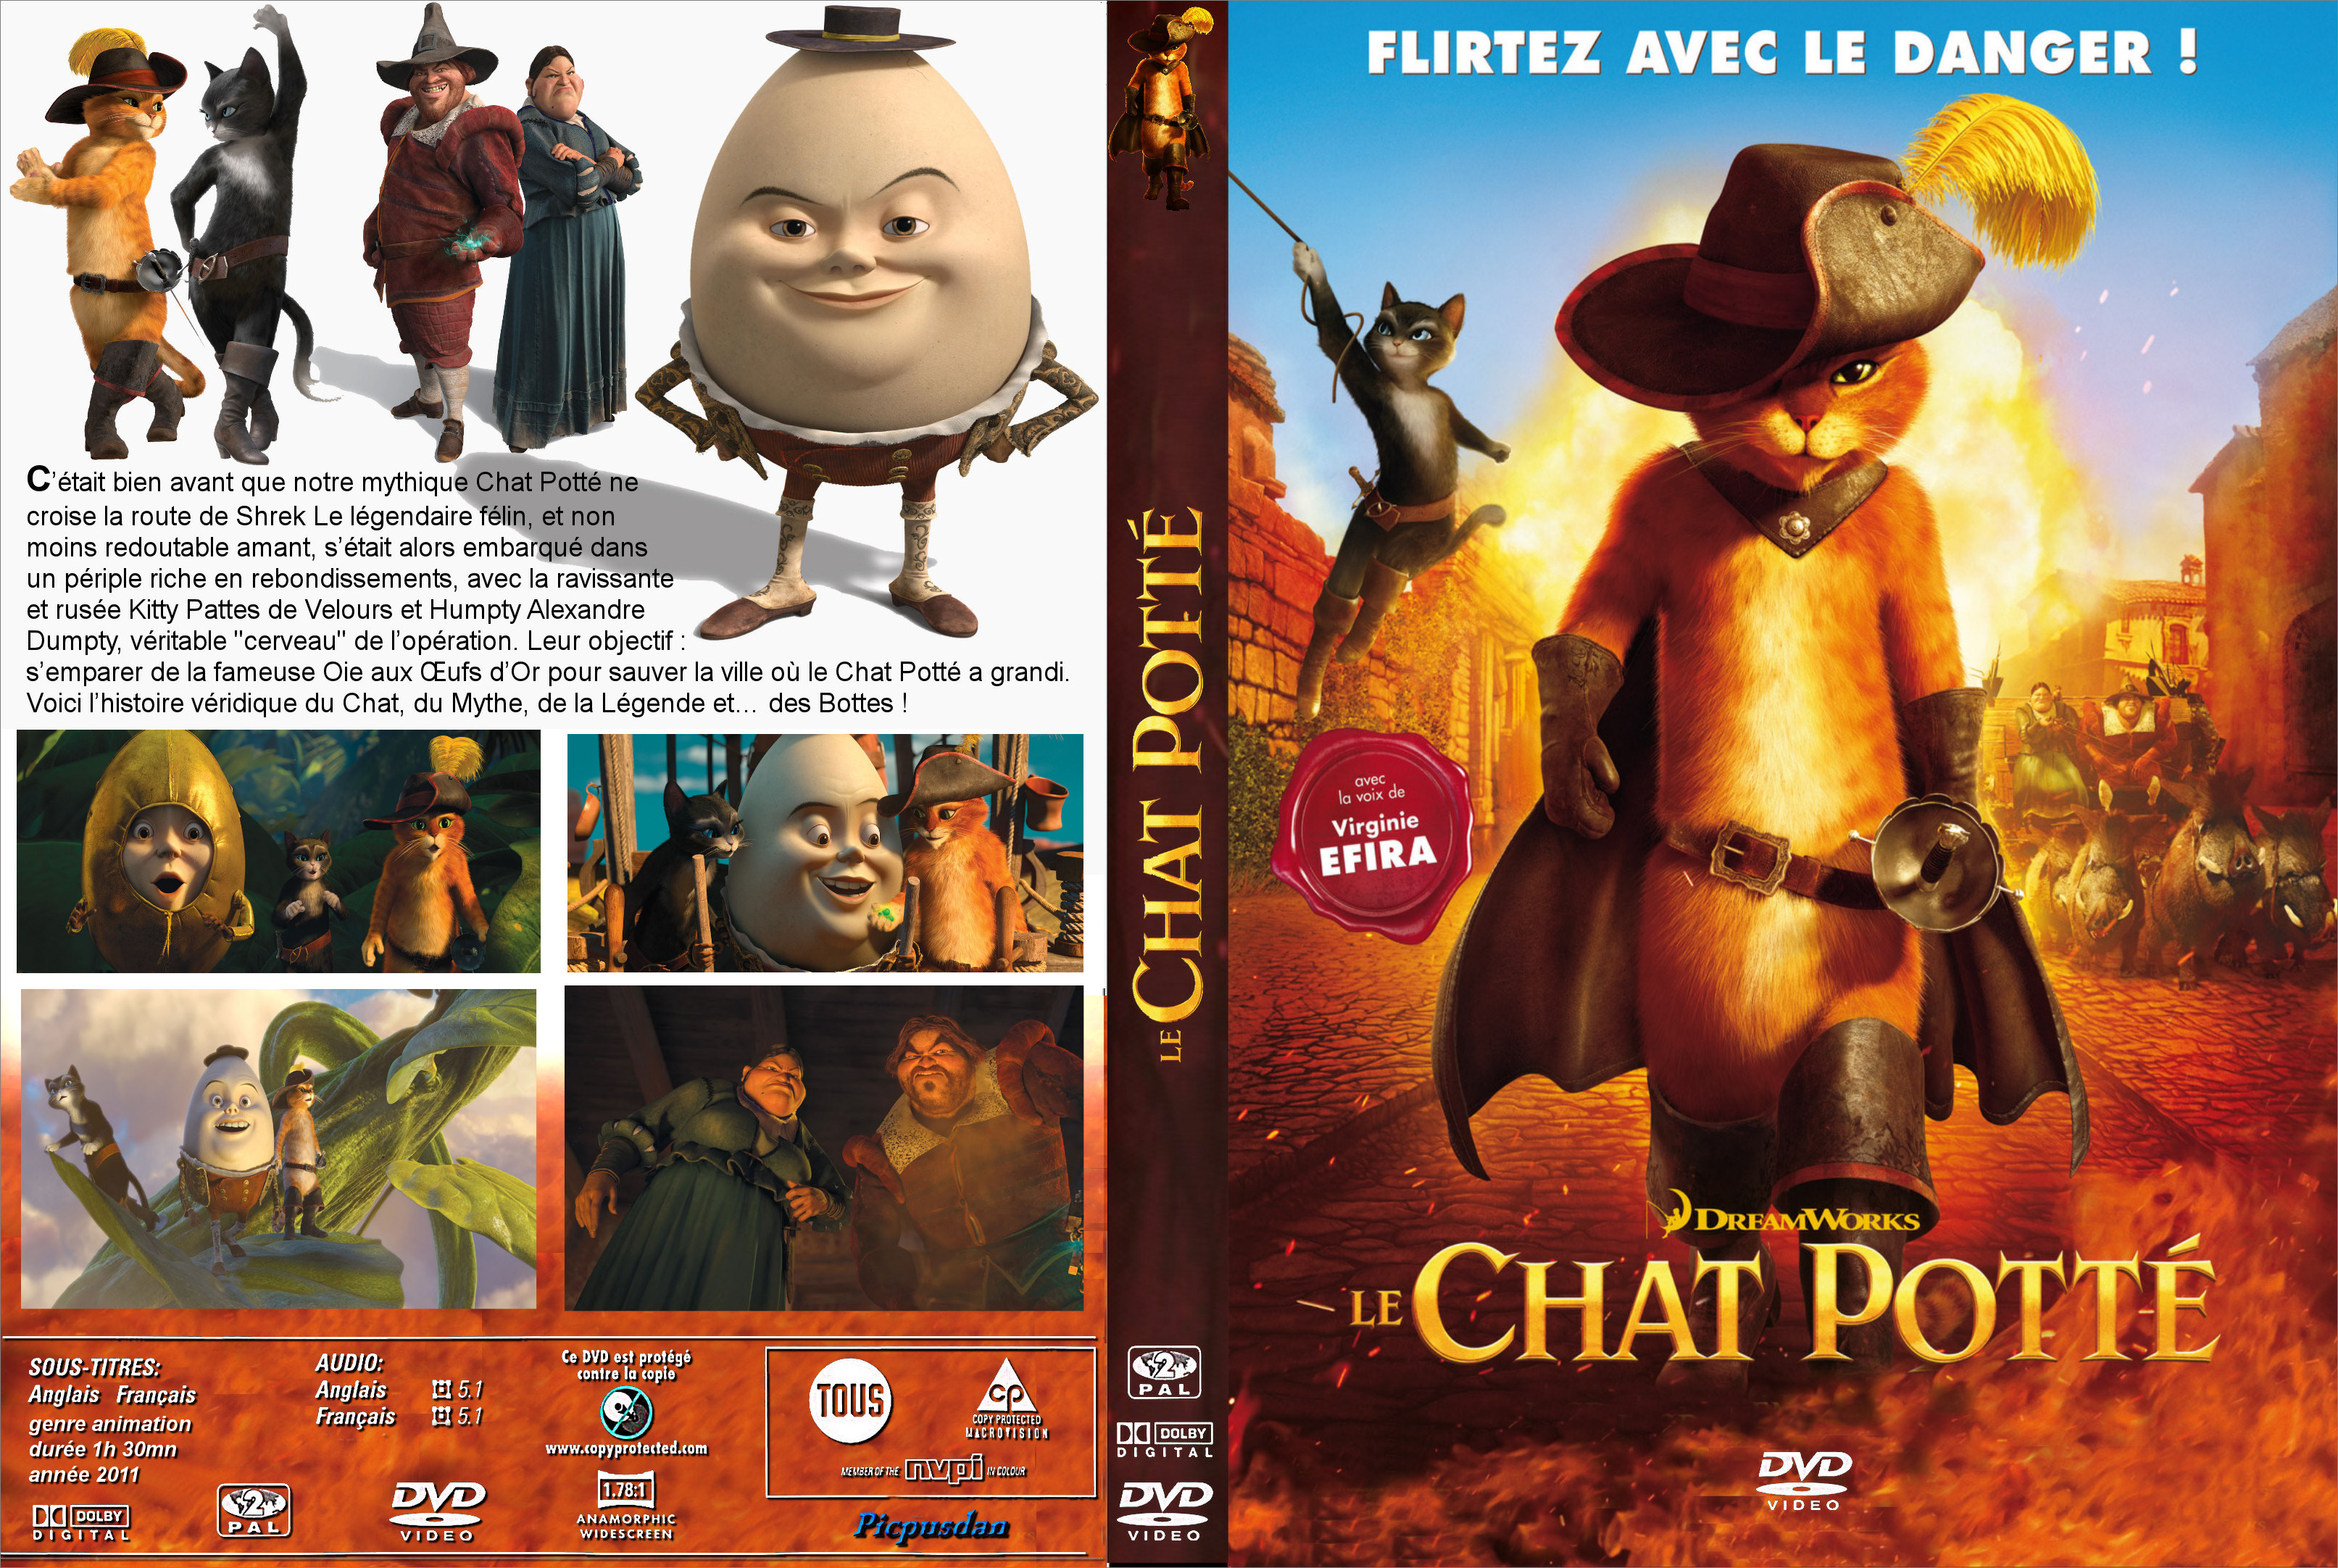 Jaquette DVD Le chat pott custom